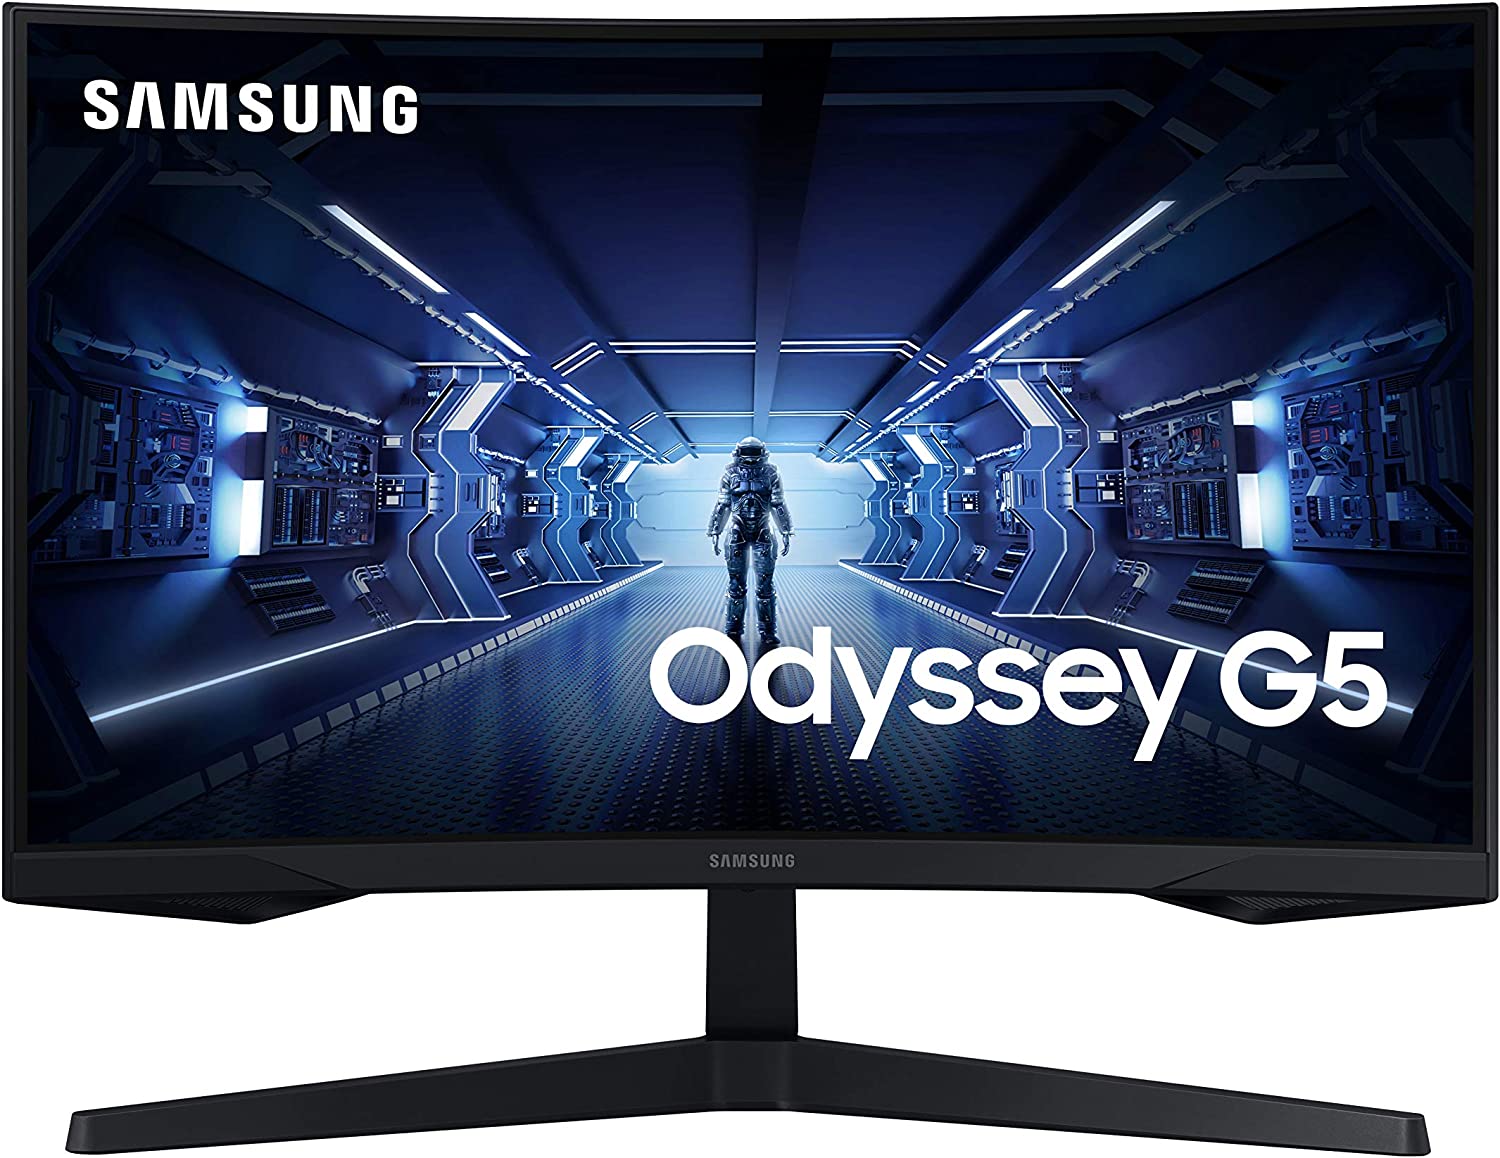 SAMSUNG Odyssey G5 Series 27-Inch WQHD (2560x1440) [...]